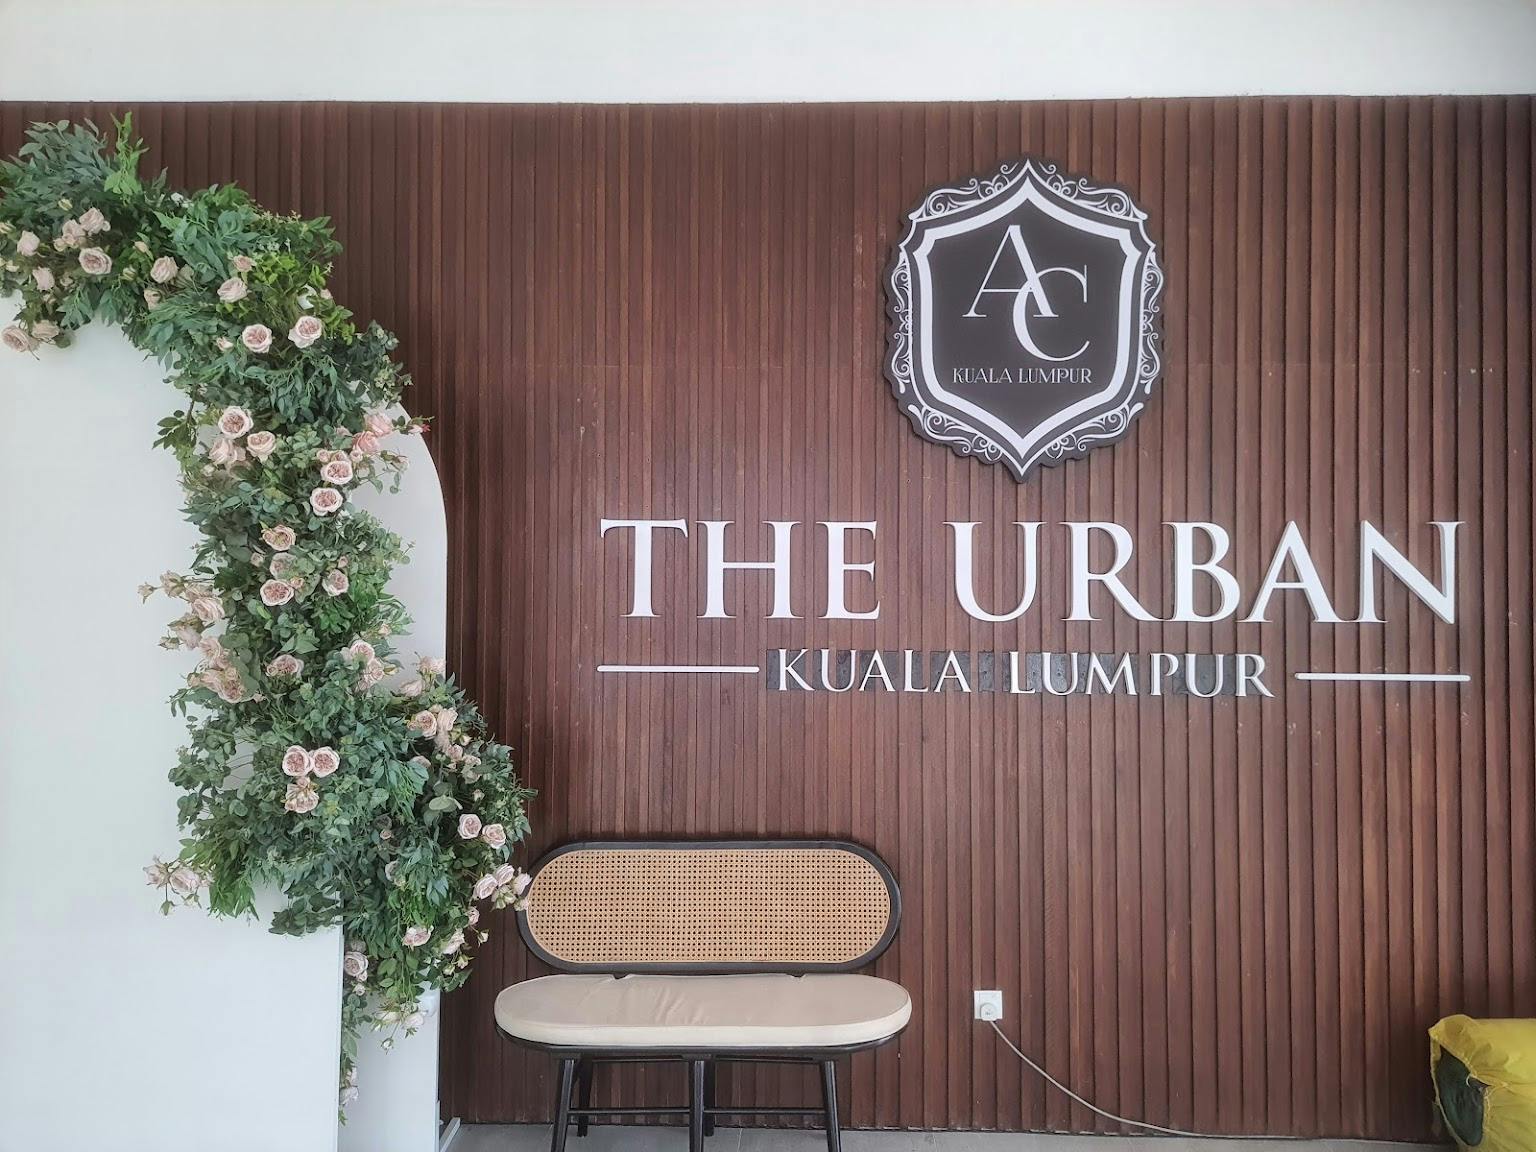 The Urban Kuala Lumpur logo